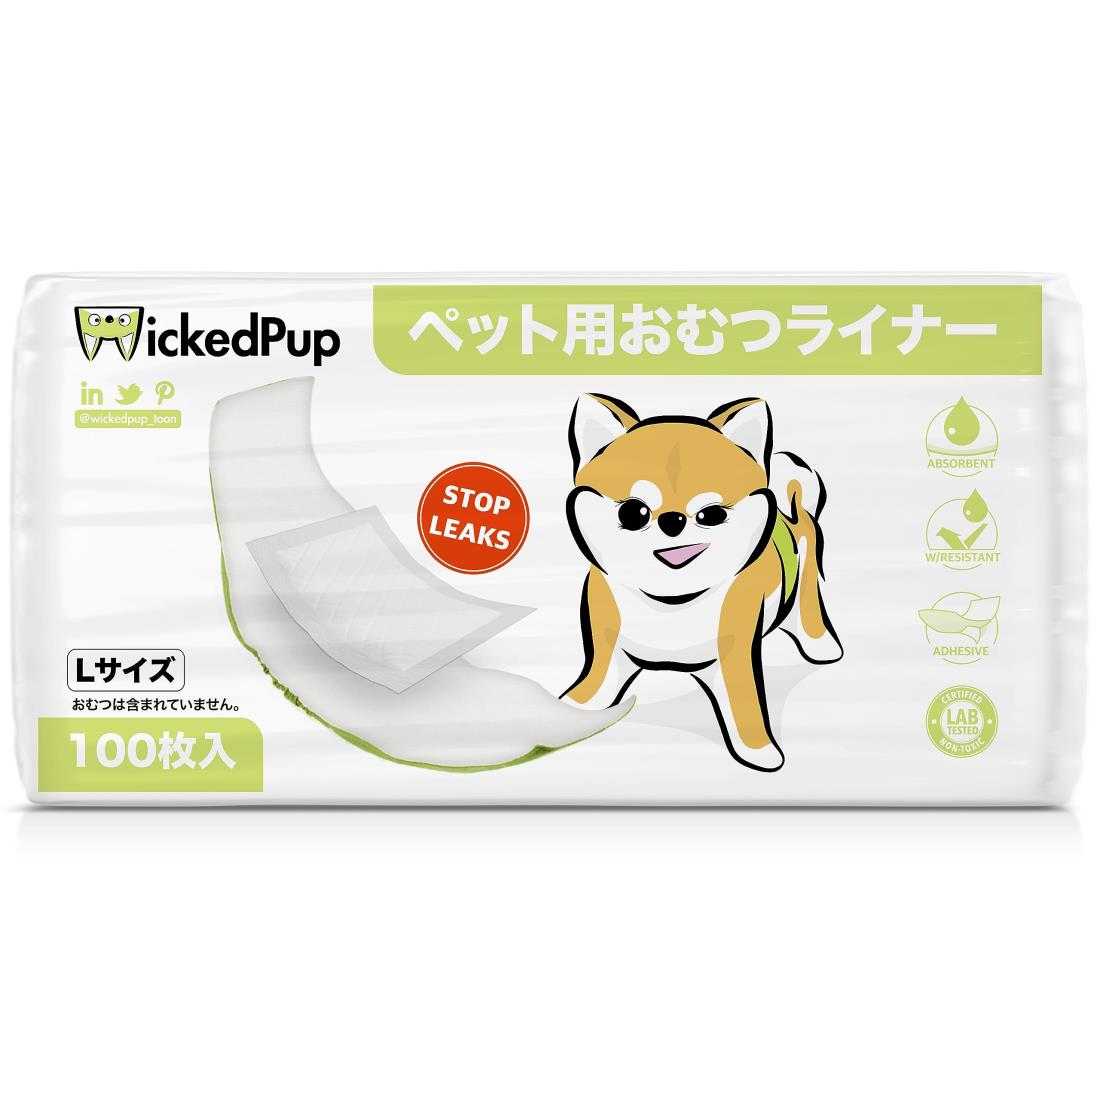 WICKEDPUP 犬用おむつライナー、100枚入 | 男の子のマナーベルトパッド | 女の子の生理用ナプキン | ペット用おしっこ吸収シート、Lサイズ